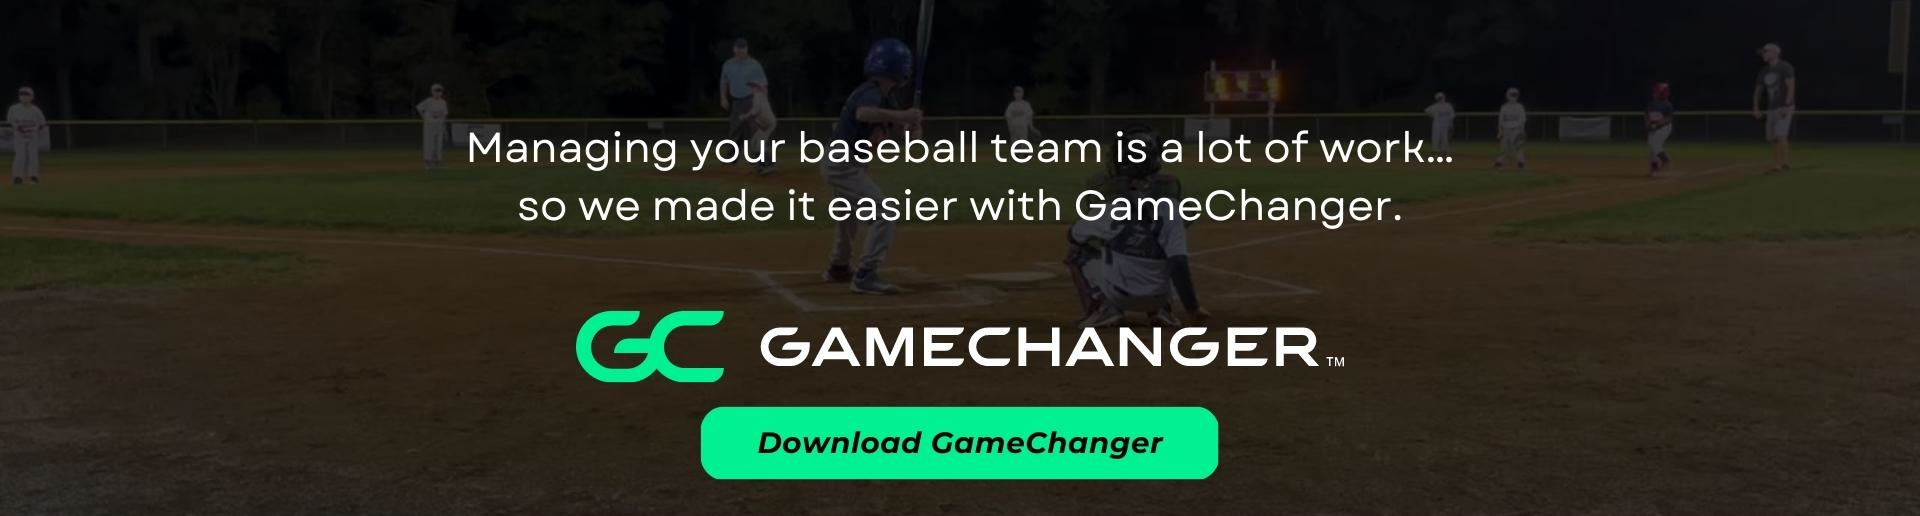 Download the GameChanger app